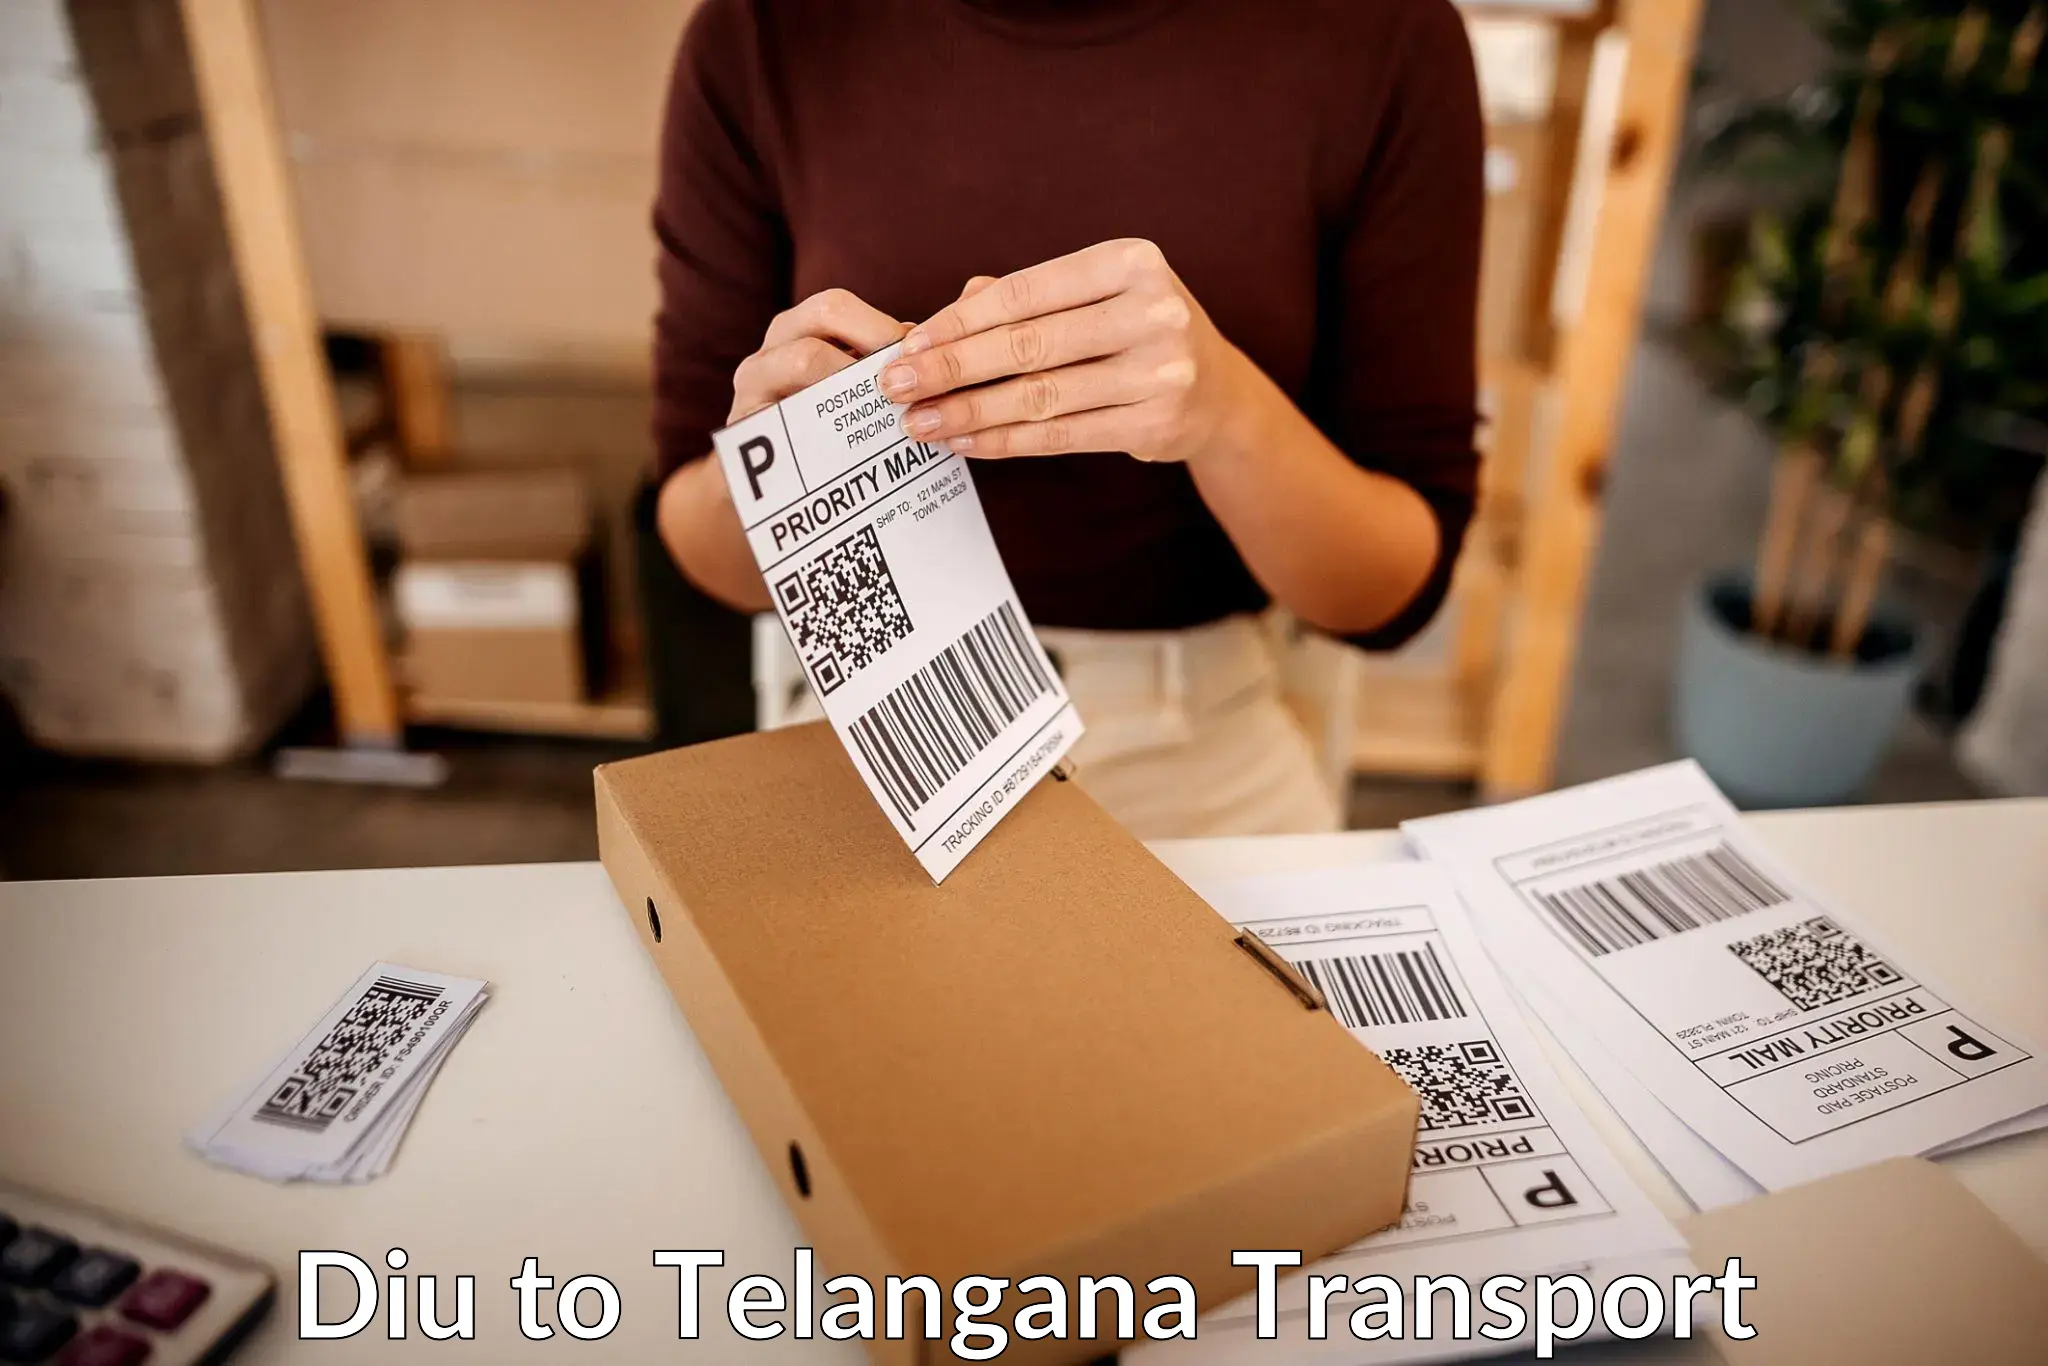 Logistics transportation services Diu to Nakerakal